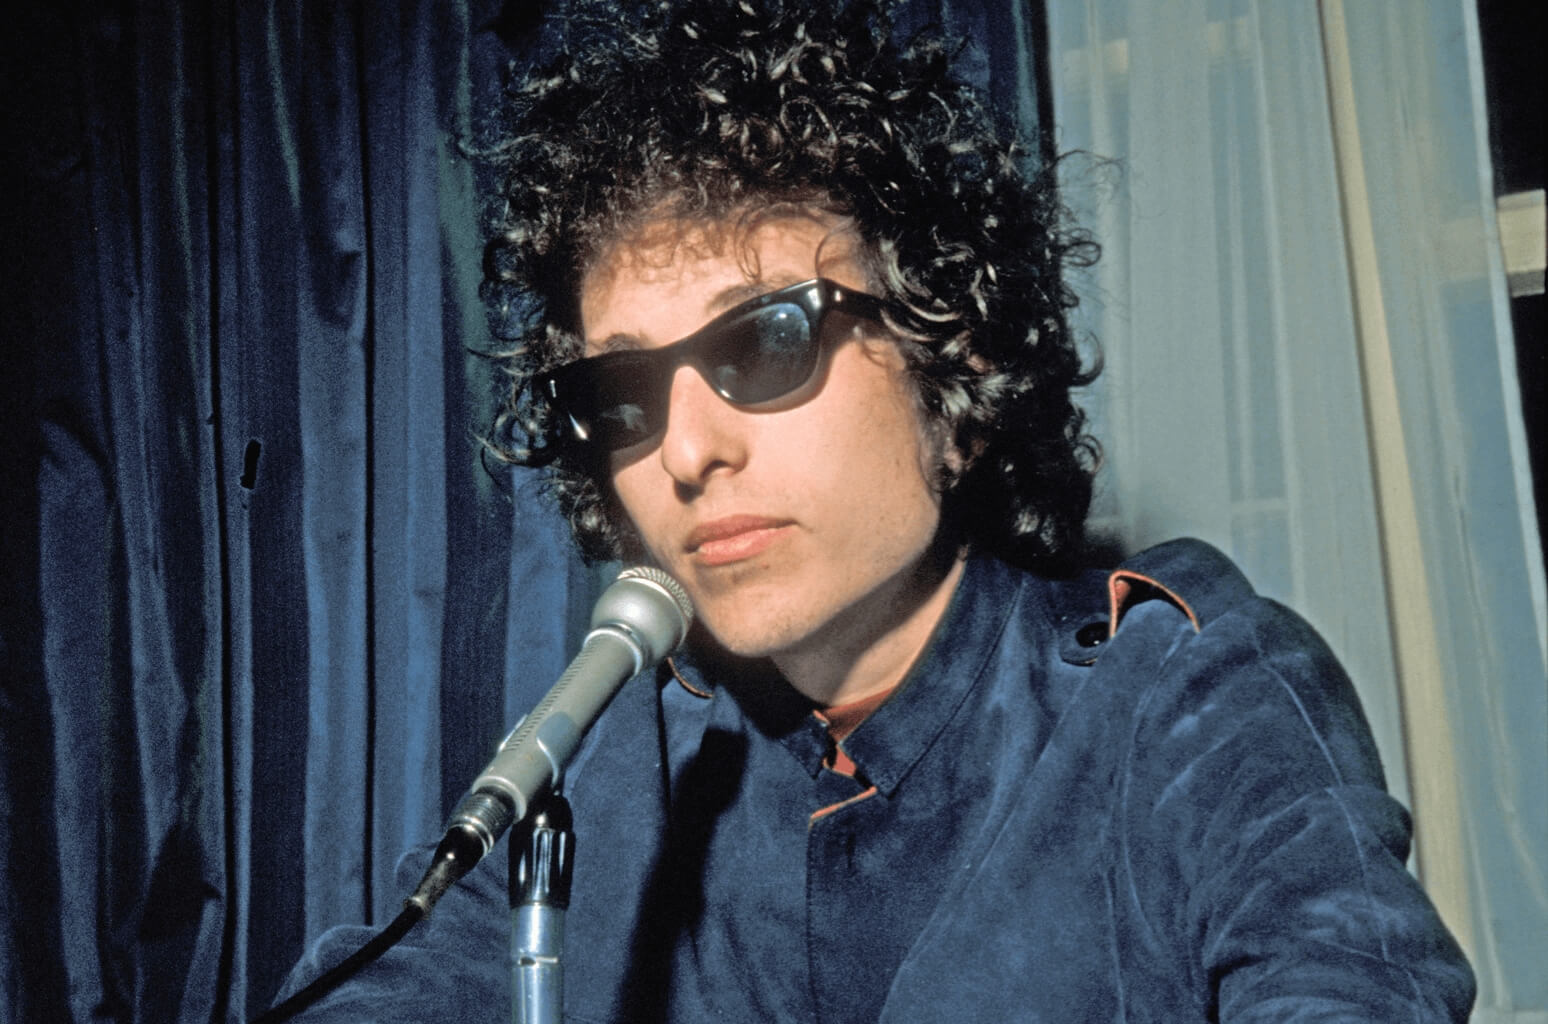 Bob Dylan（ボブ・ディラン）のプロフィール・バイオグラフィーまとめ